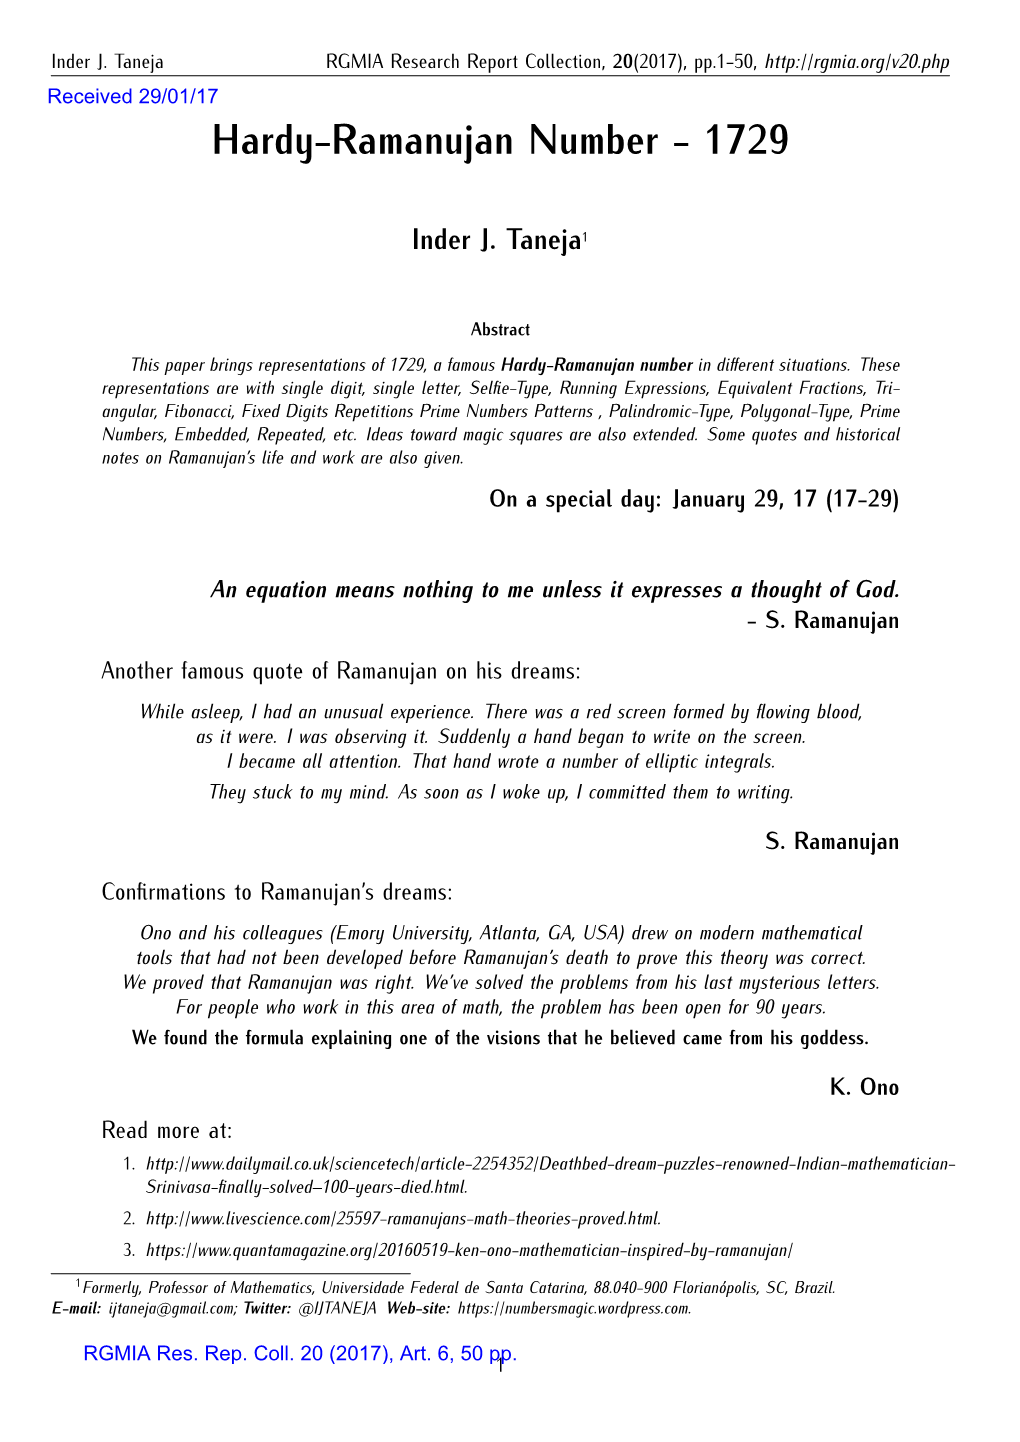 Hardy-Ramanujan Number - 1729